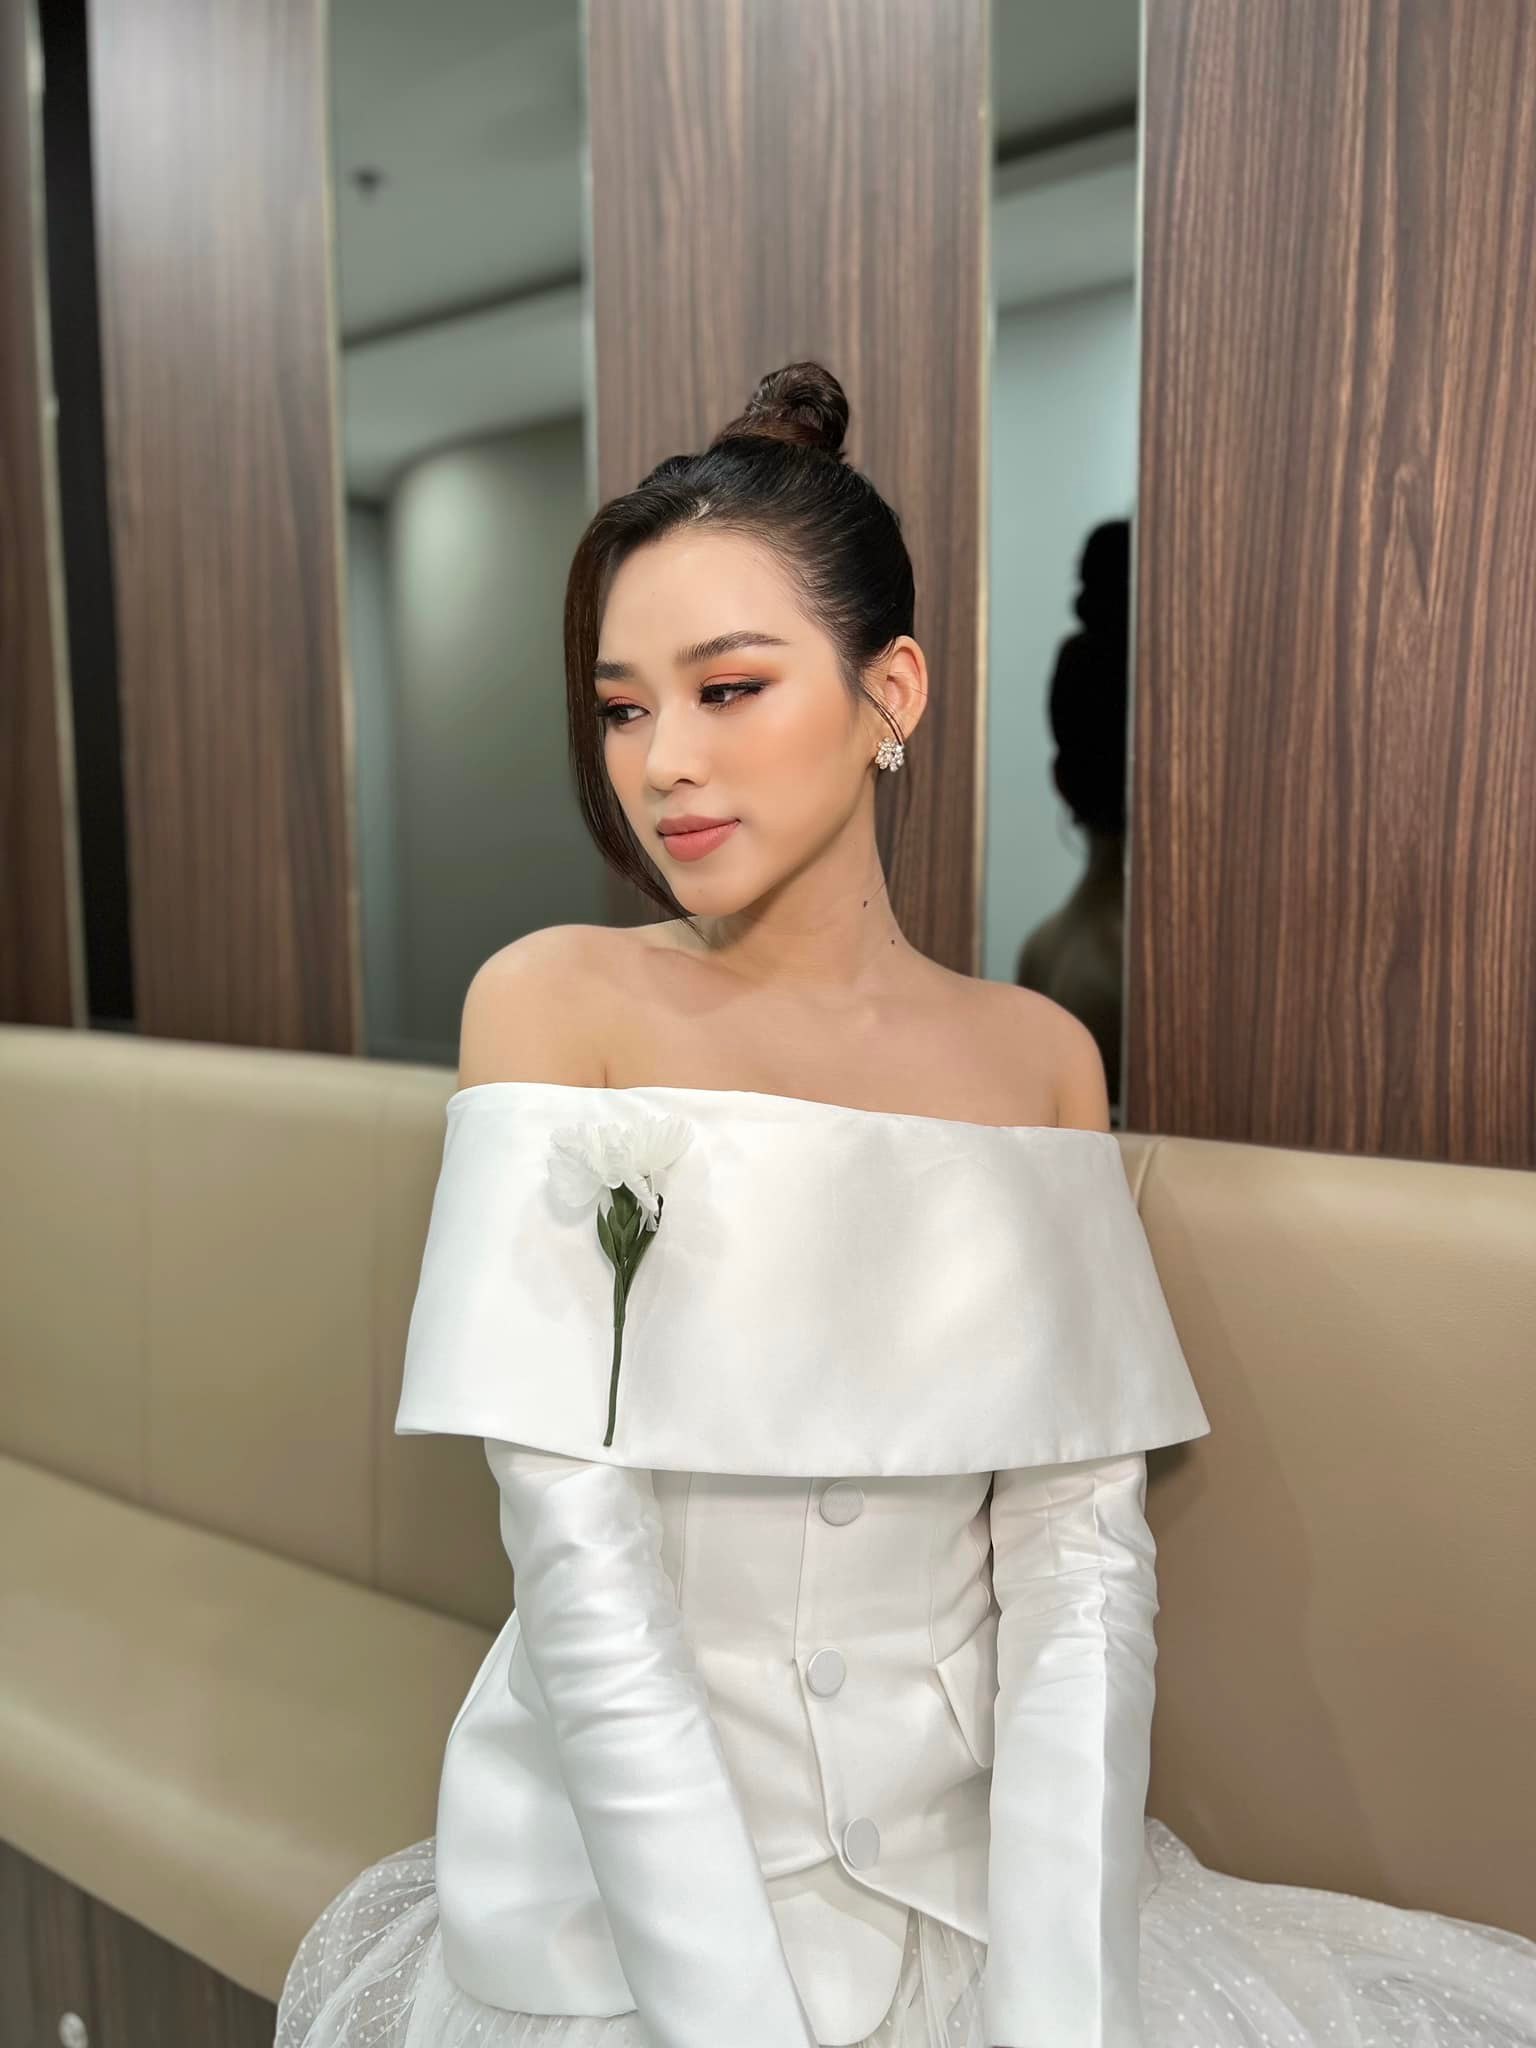 Hoa hậu Đỗ Thị Hà bật mí ngày Tết: Ngoài làm 'chân sai vặt' còn có 'nỗi ám ảnh' của triệu cô gái!